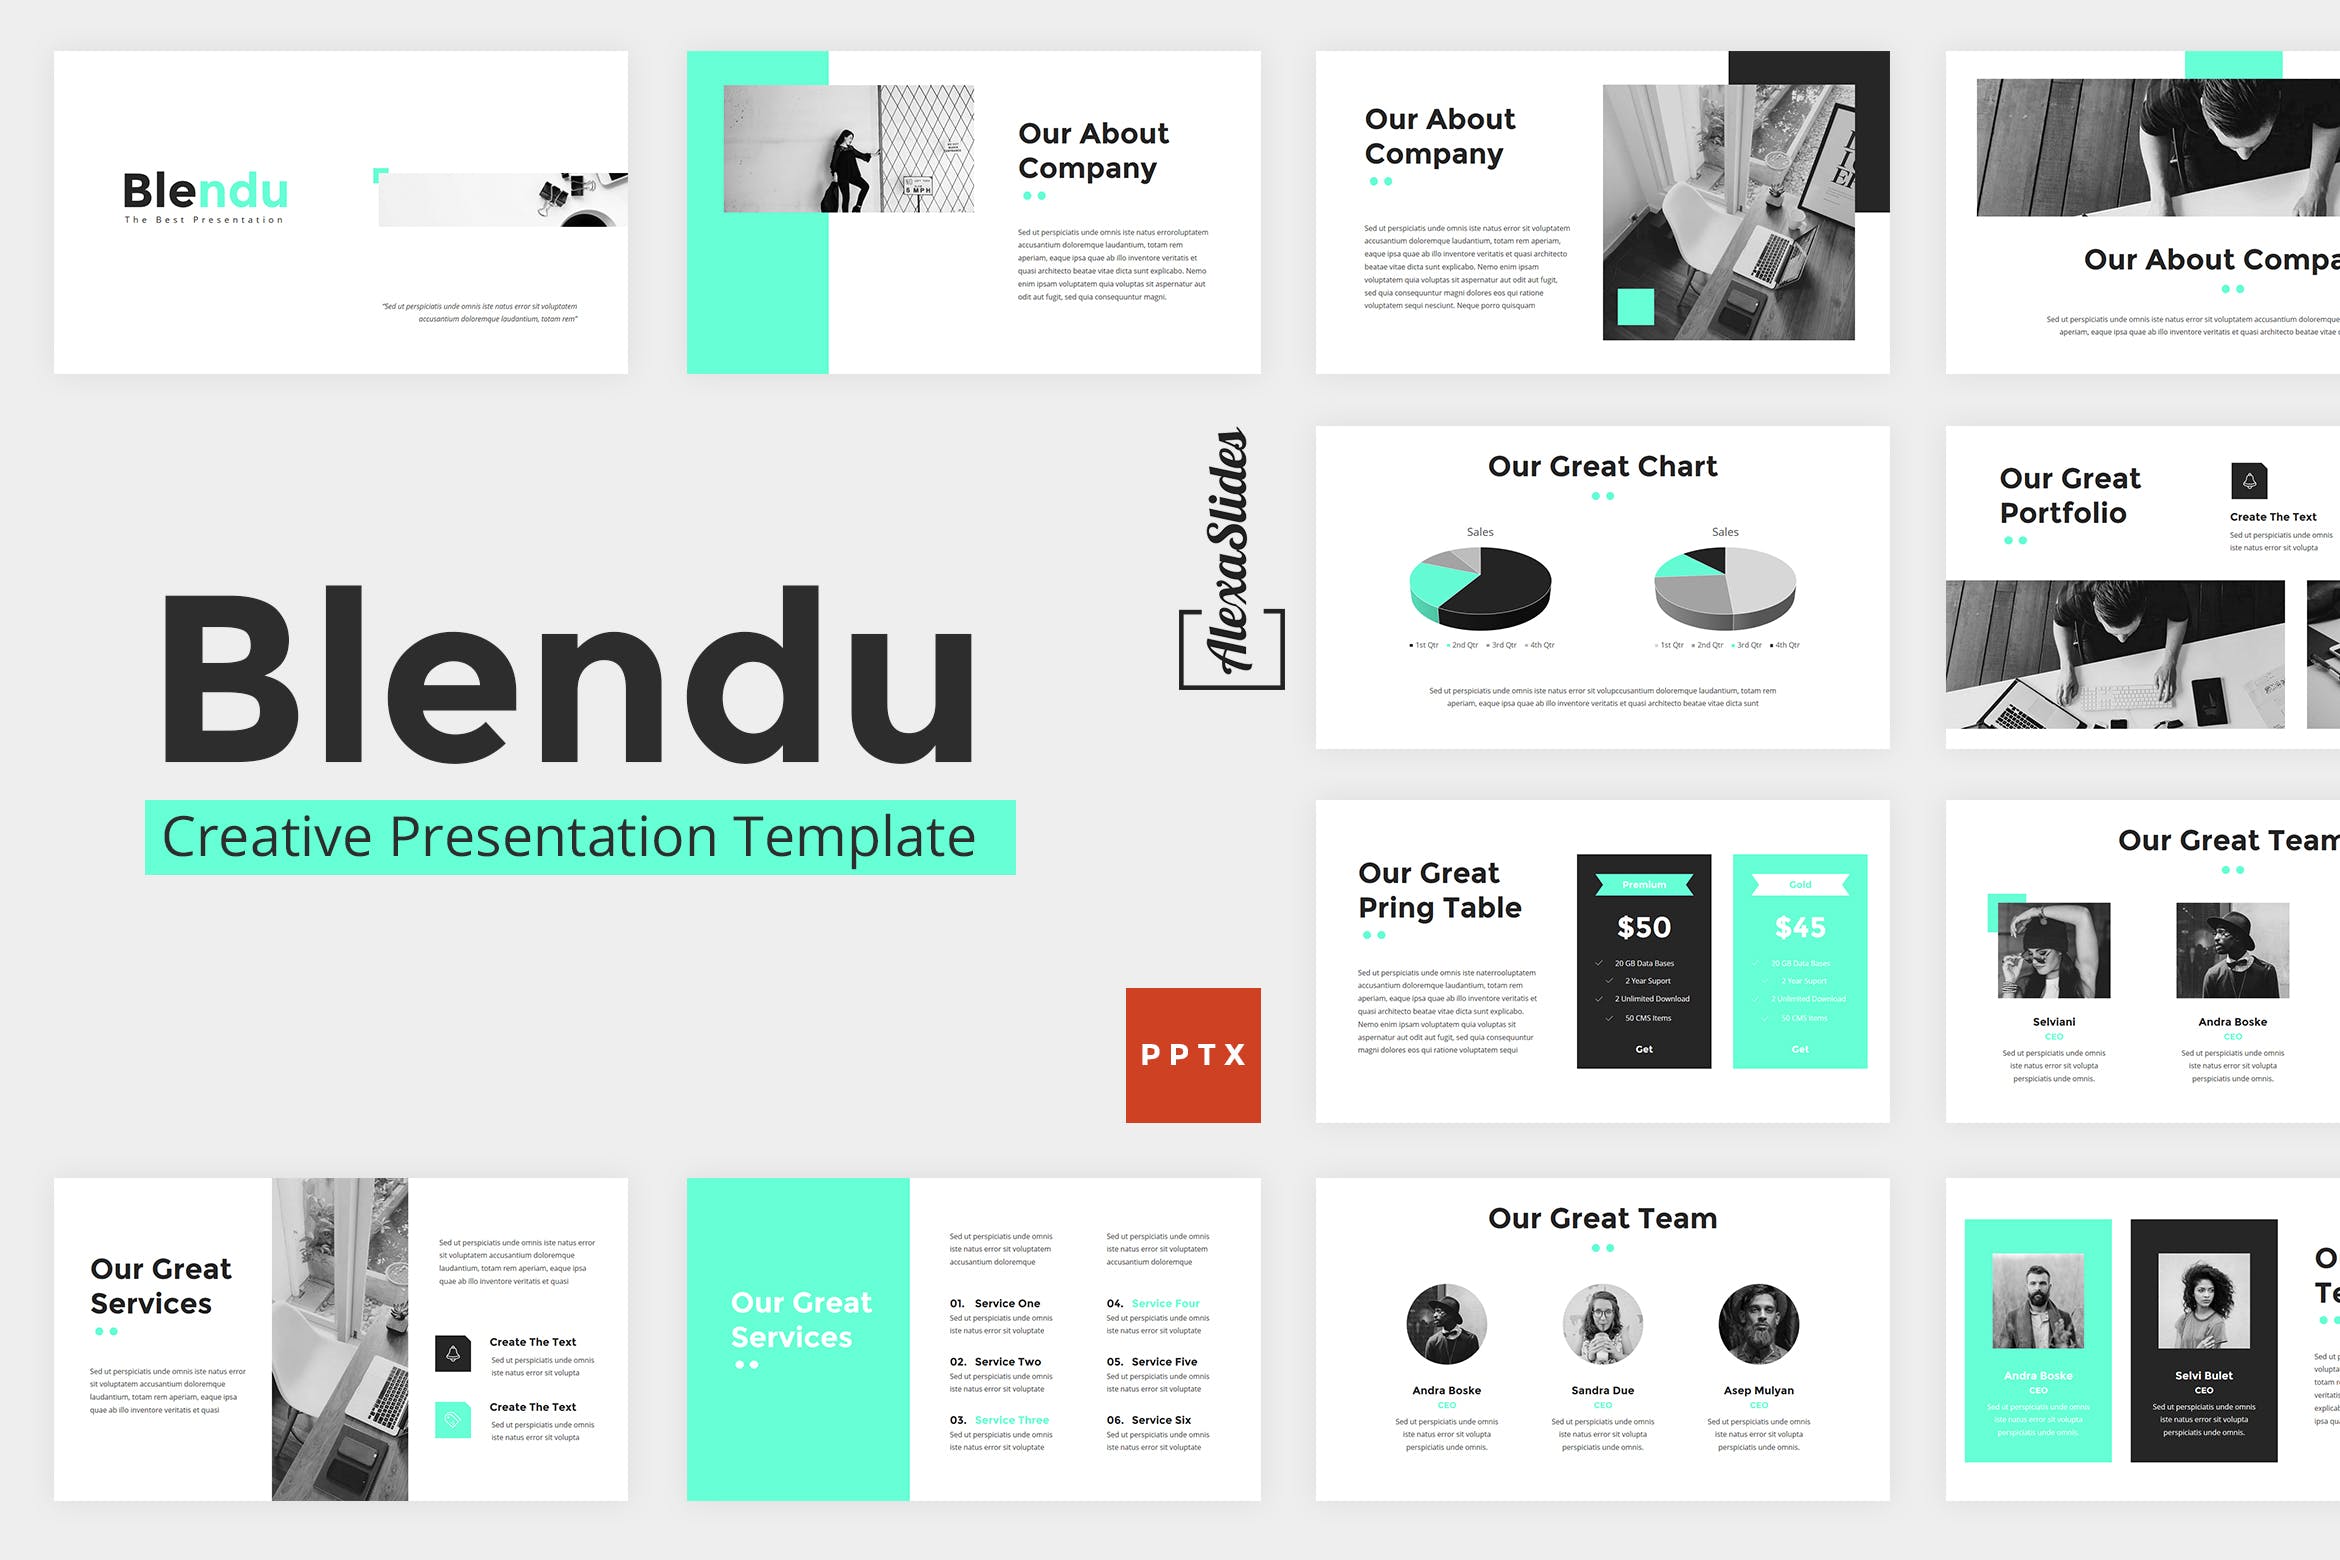 企业品牌营销商业展示幻灯片模版下载Blendu Powerpoint Presentation Template插图